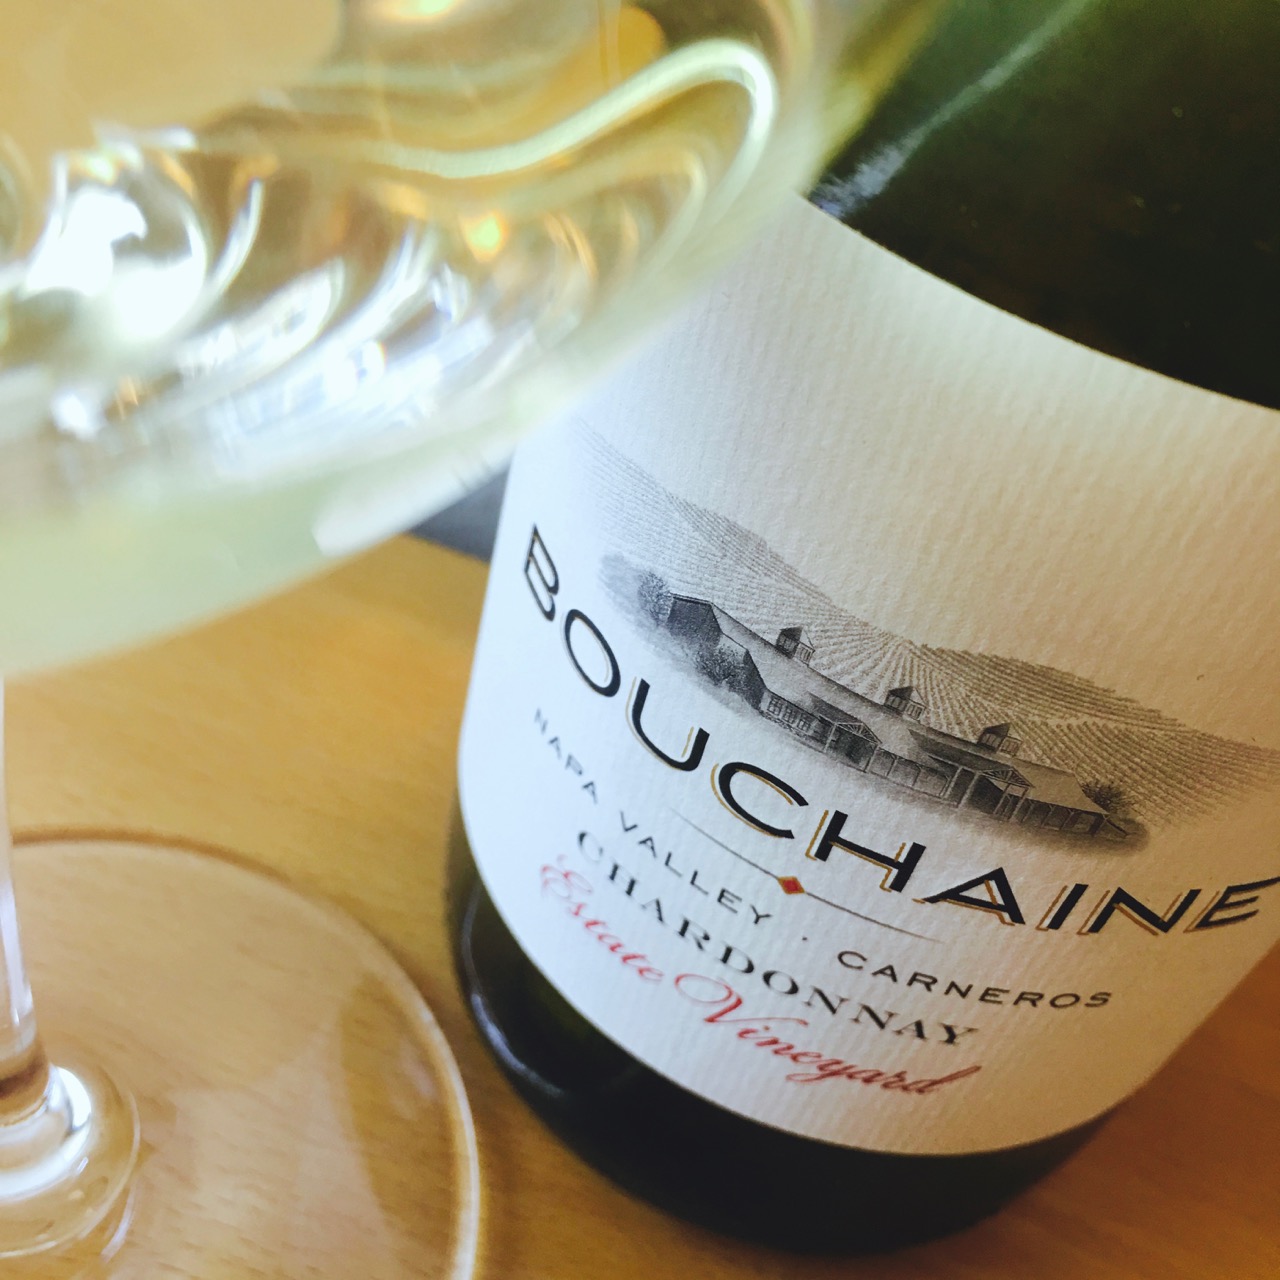 2013 Bouchaine Estate Chardonnay Carneros, Napa Valley